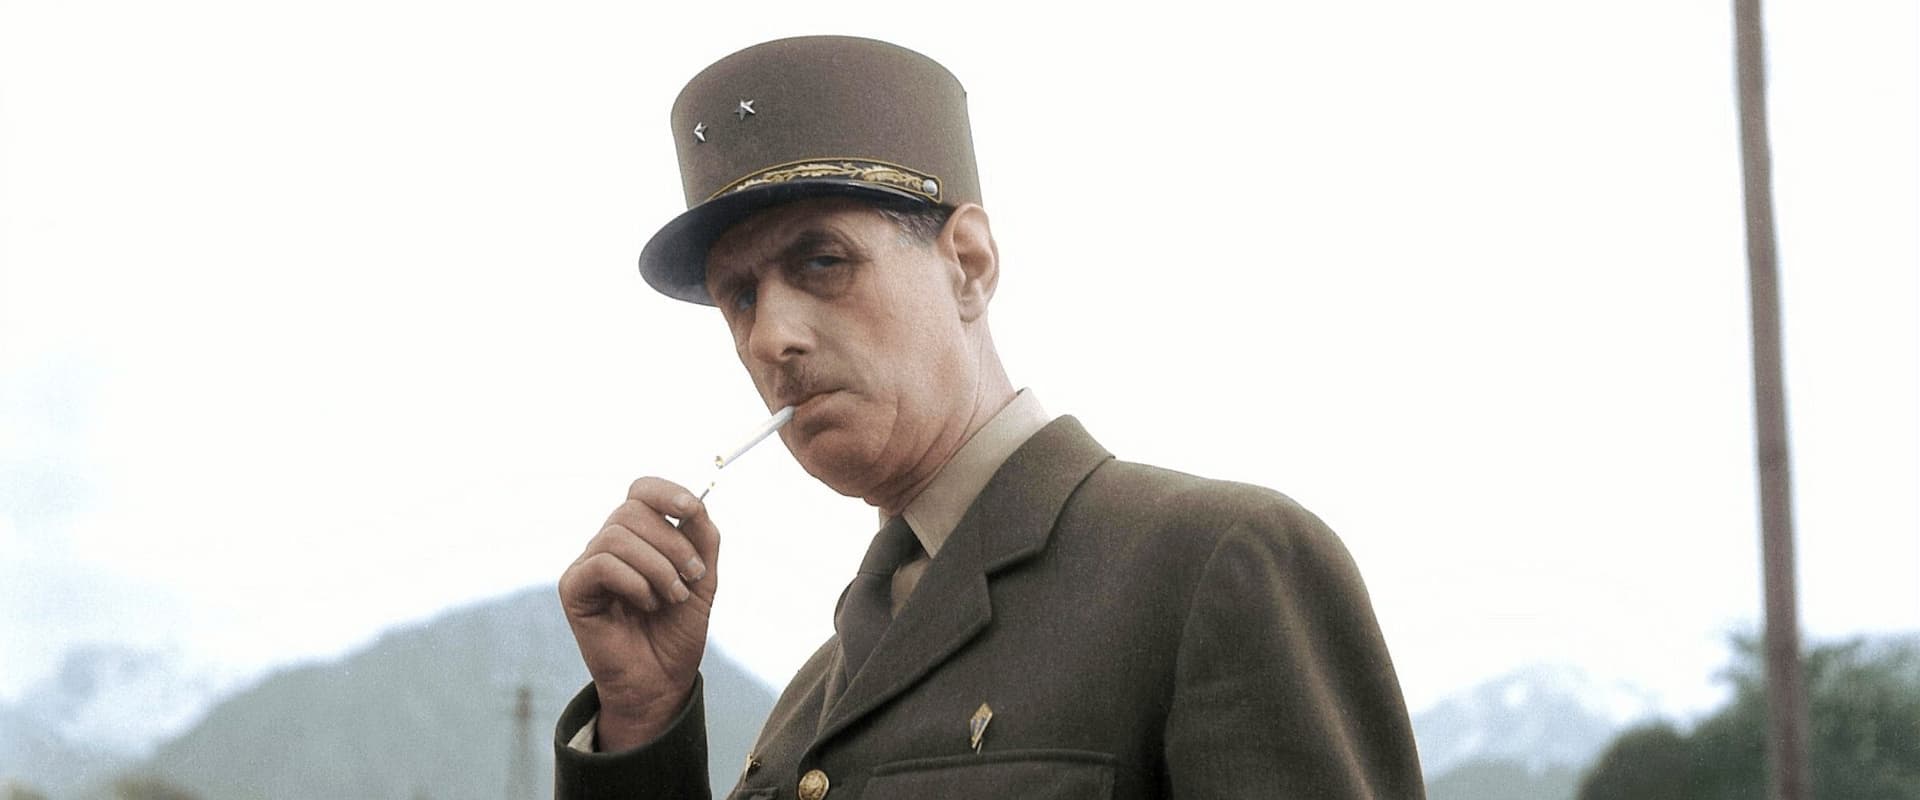 De Gaulle, histoire d'un géant